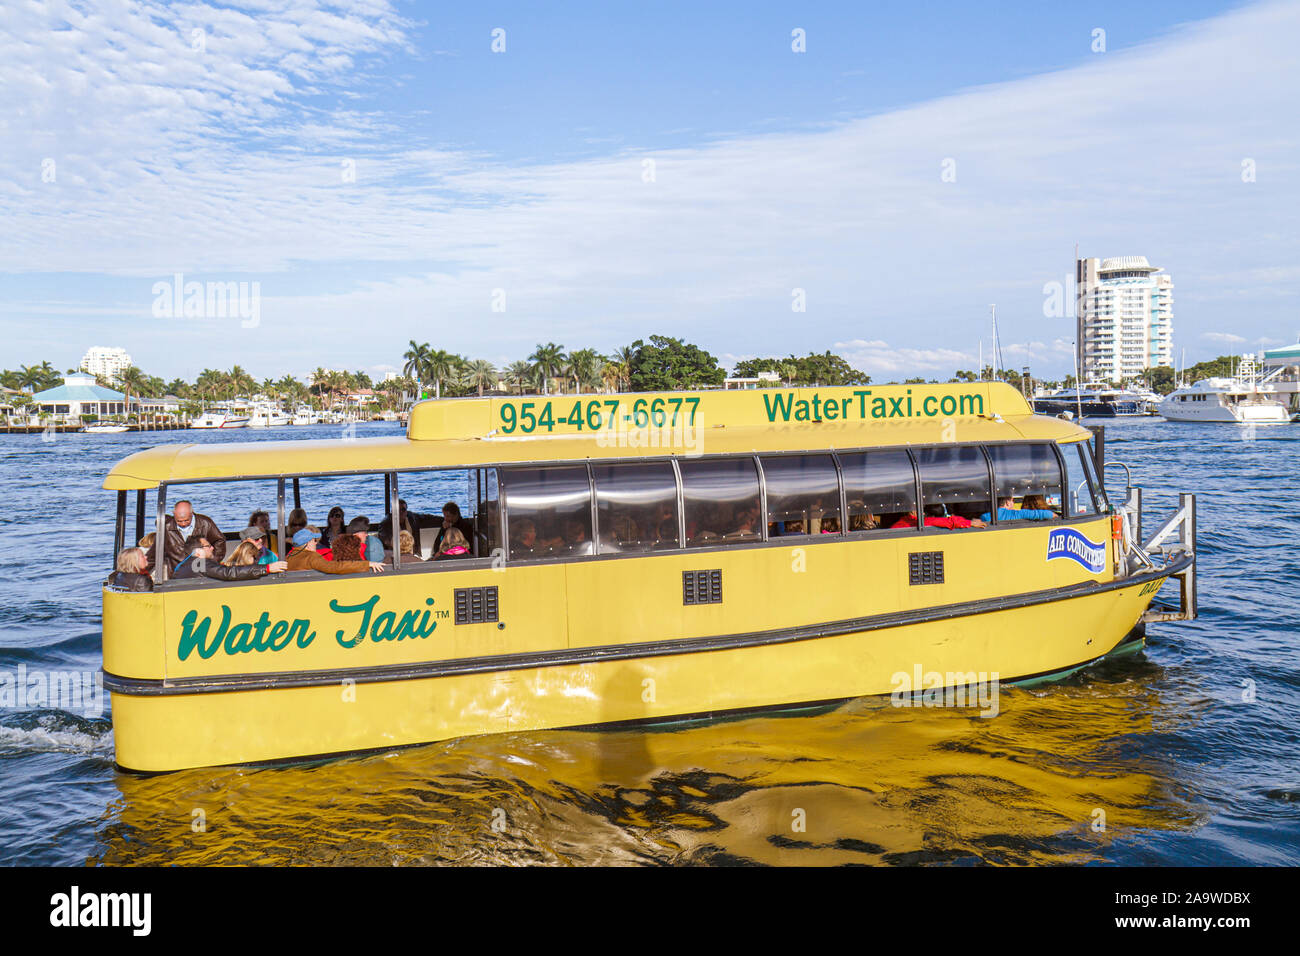 Fort Ft. Lauderdale, Florida, Intracoastal water taxi, taxis, barco, visitantes viaje recorrido turístico turismo puntos de referencia cultura cultural, vaca Foto de stock